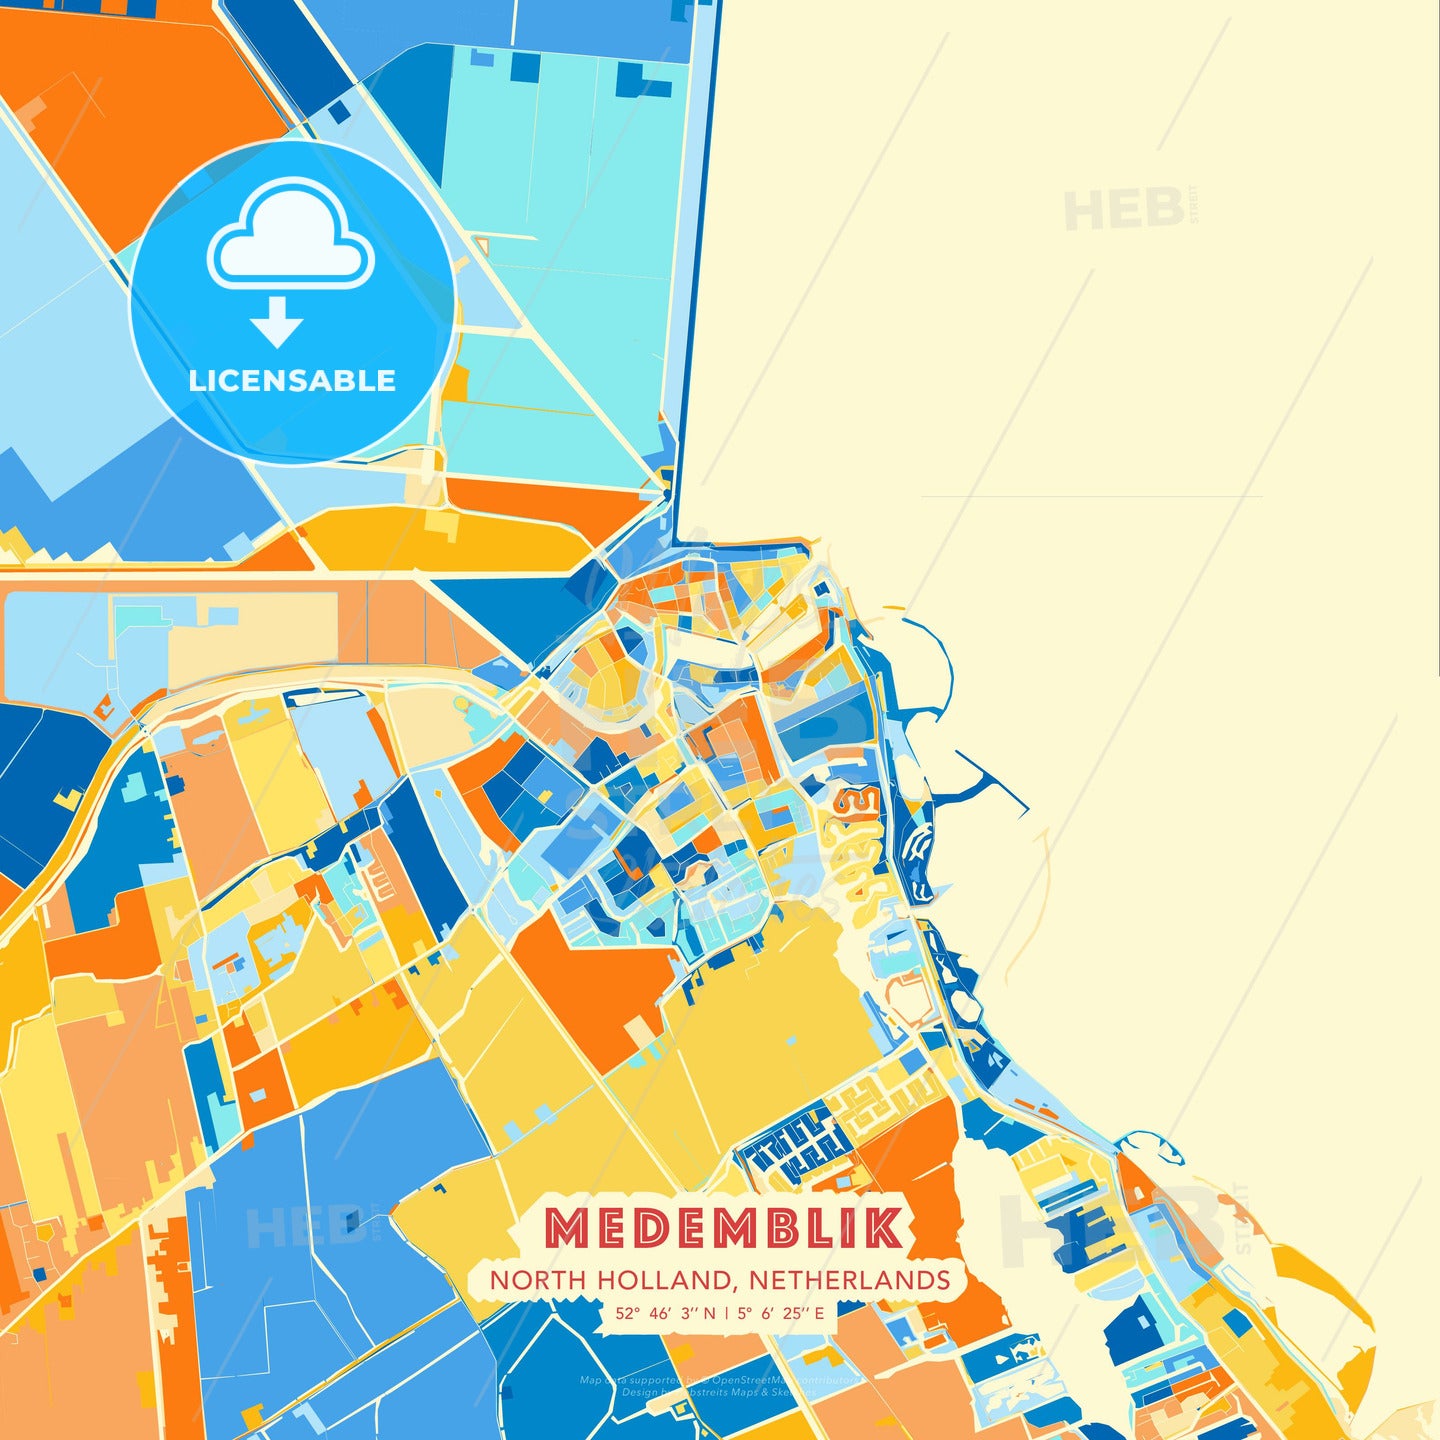 Medemblik, North Holland, Netherlands, map - HEBSTREITS Sketches